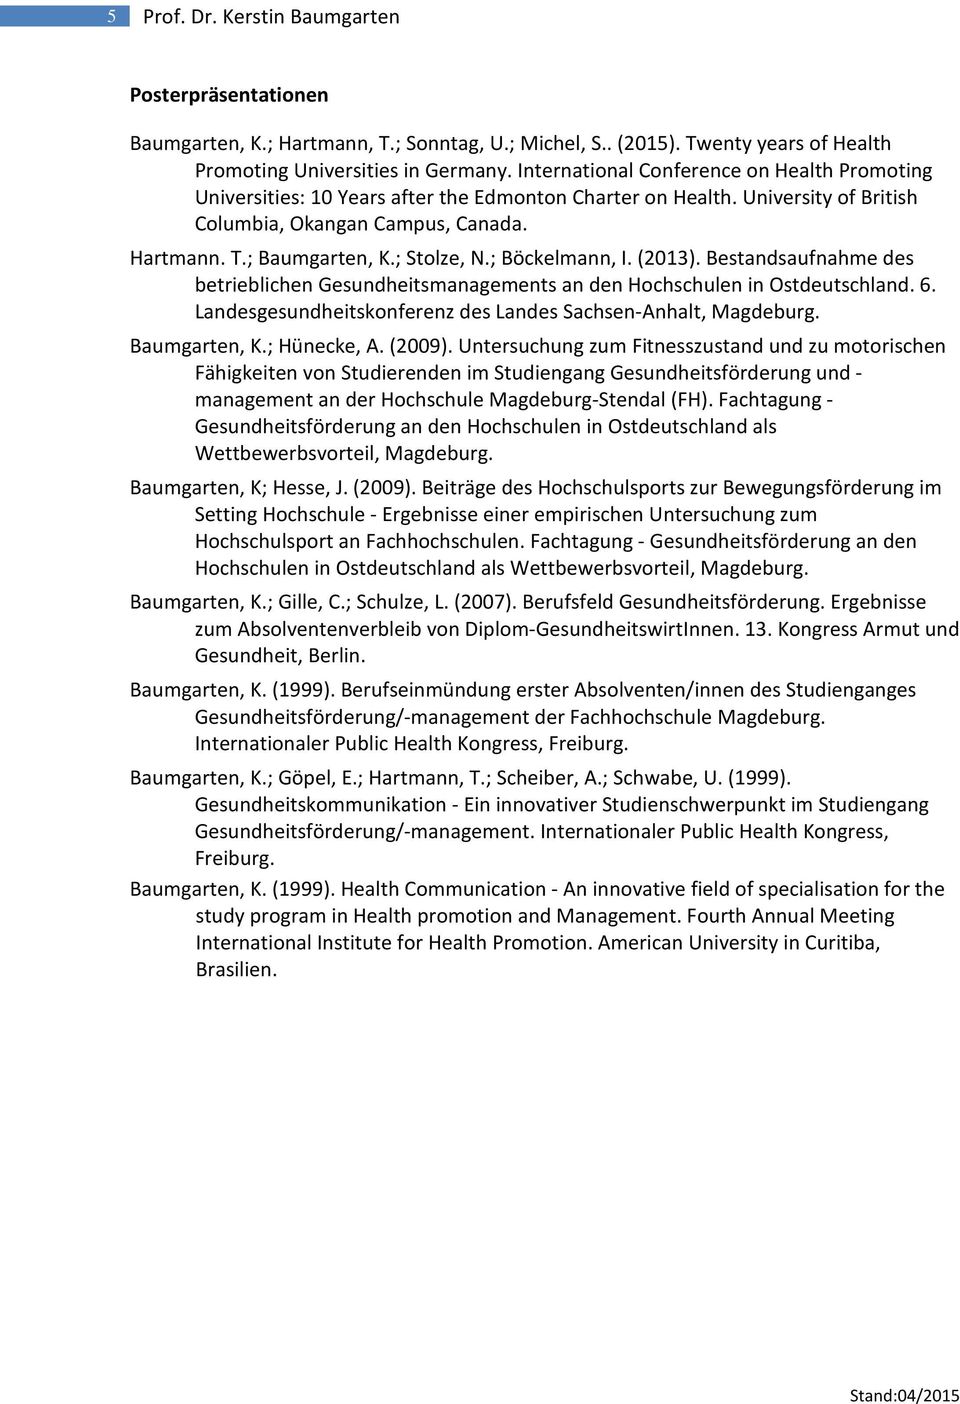 ; Stolze, N.; Böckelmann, I. (2013). Bestandsaufnahme des betrieblichen Gesundheitsmanagements an den Hochschulen in Ostdeutschland. 6. Landesgesundheitskonferenz des Landes Sachsen-Anhalt, Magdeburg.